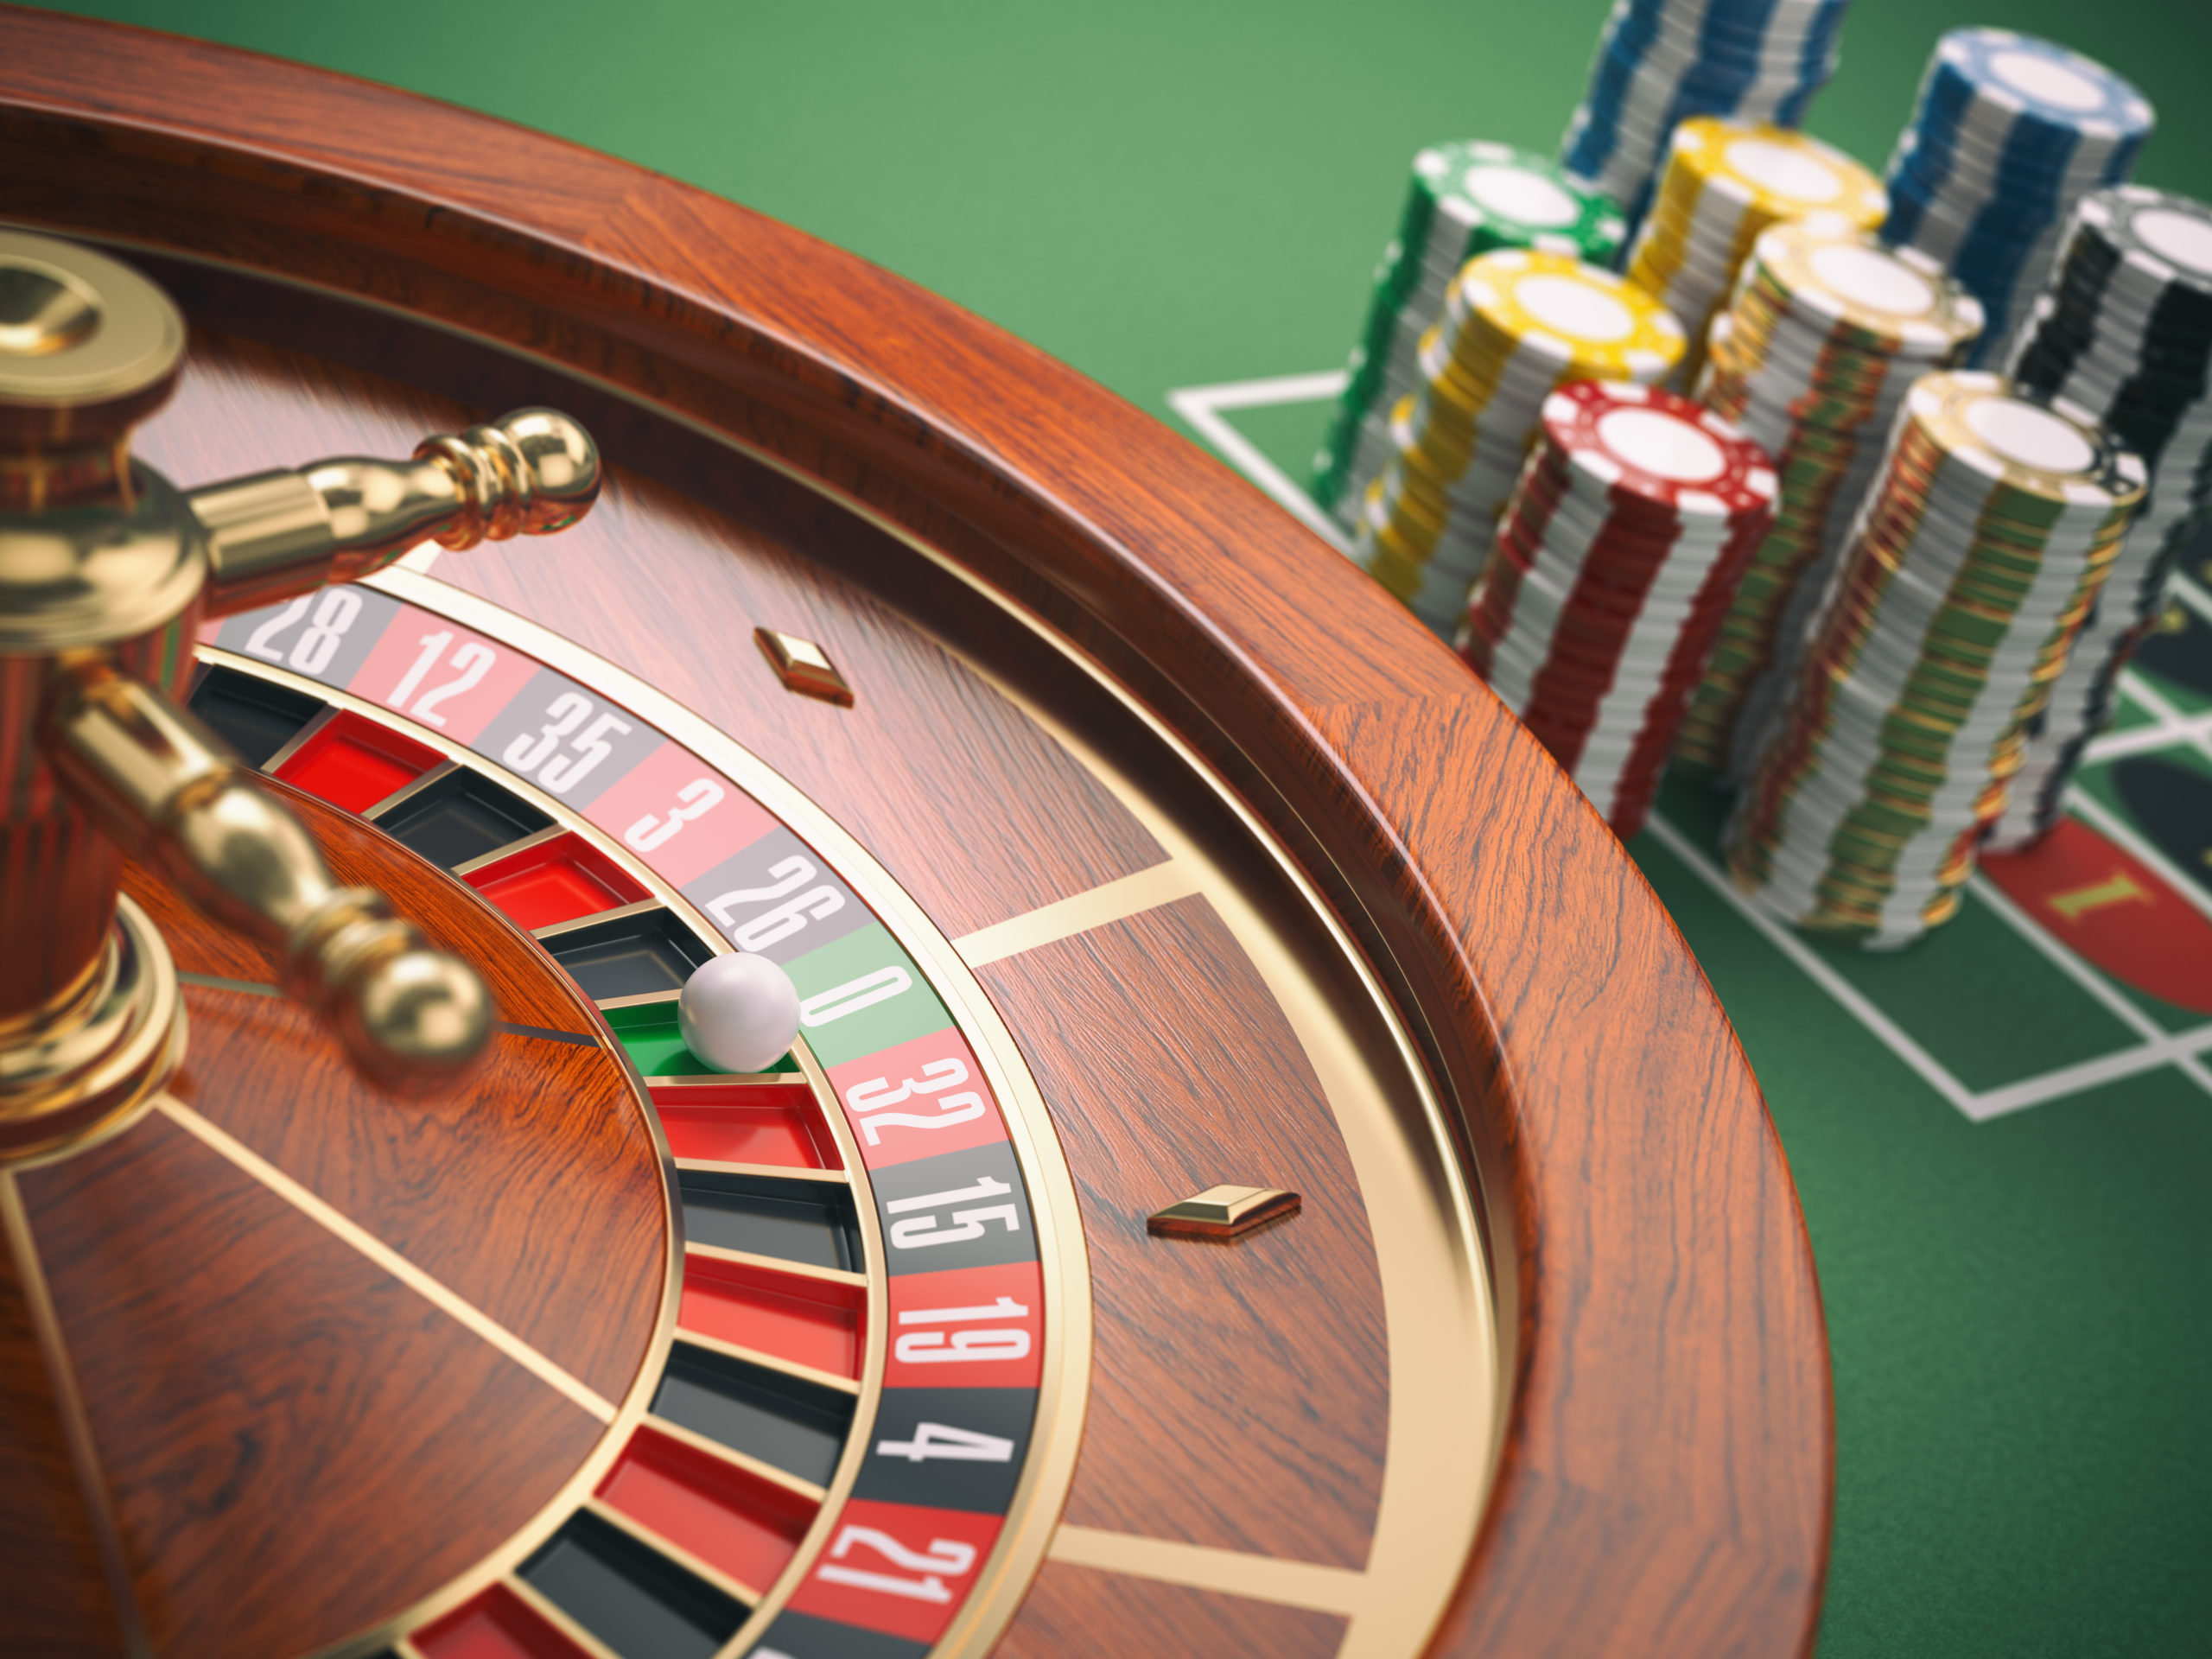 Update: Fällt das Verbot für Online-Glücksspiele?